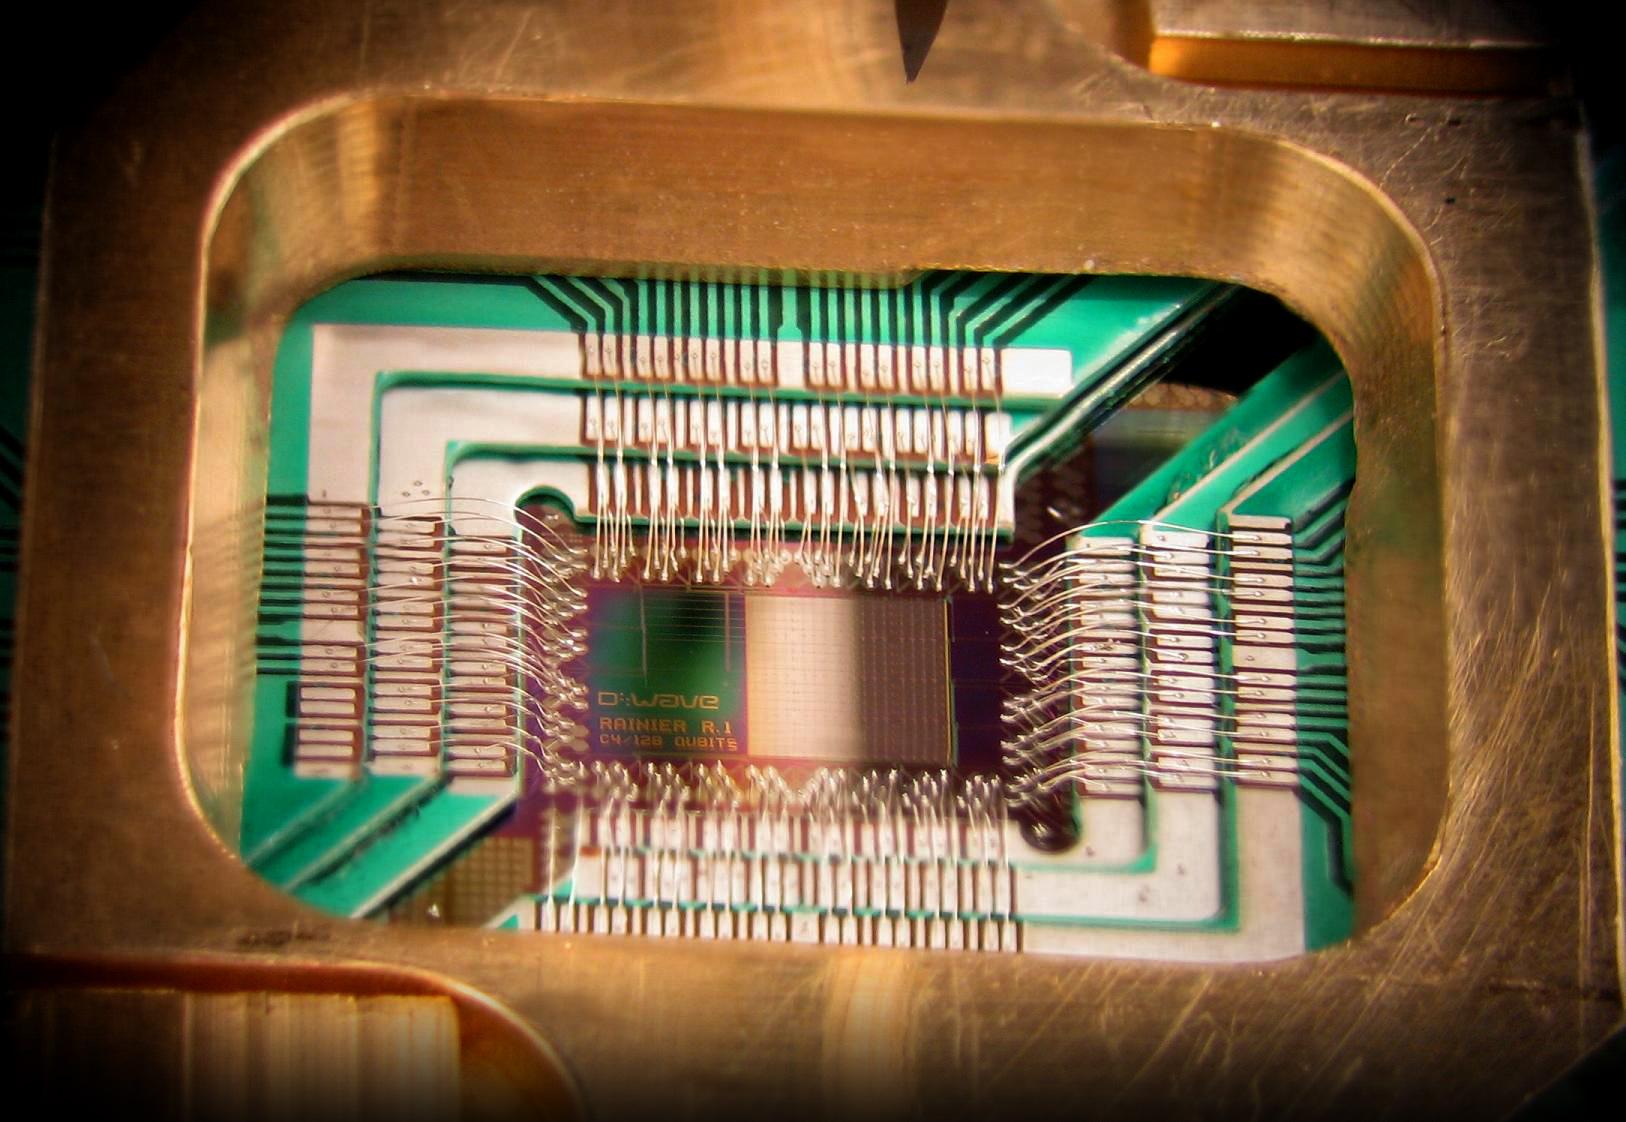 D-wave quantum computer